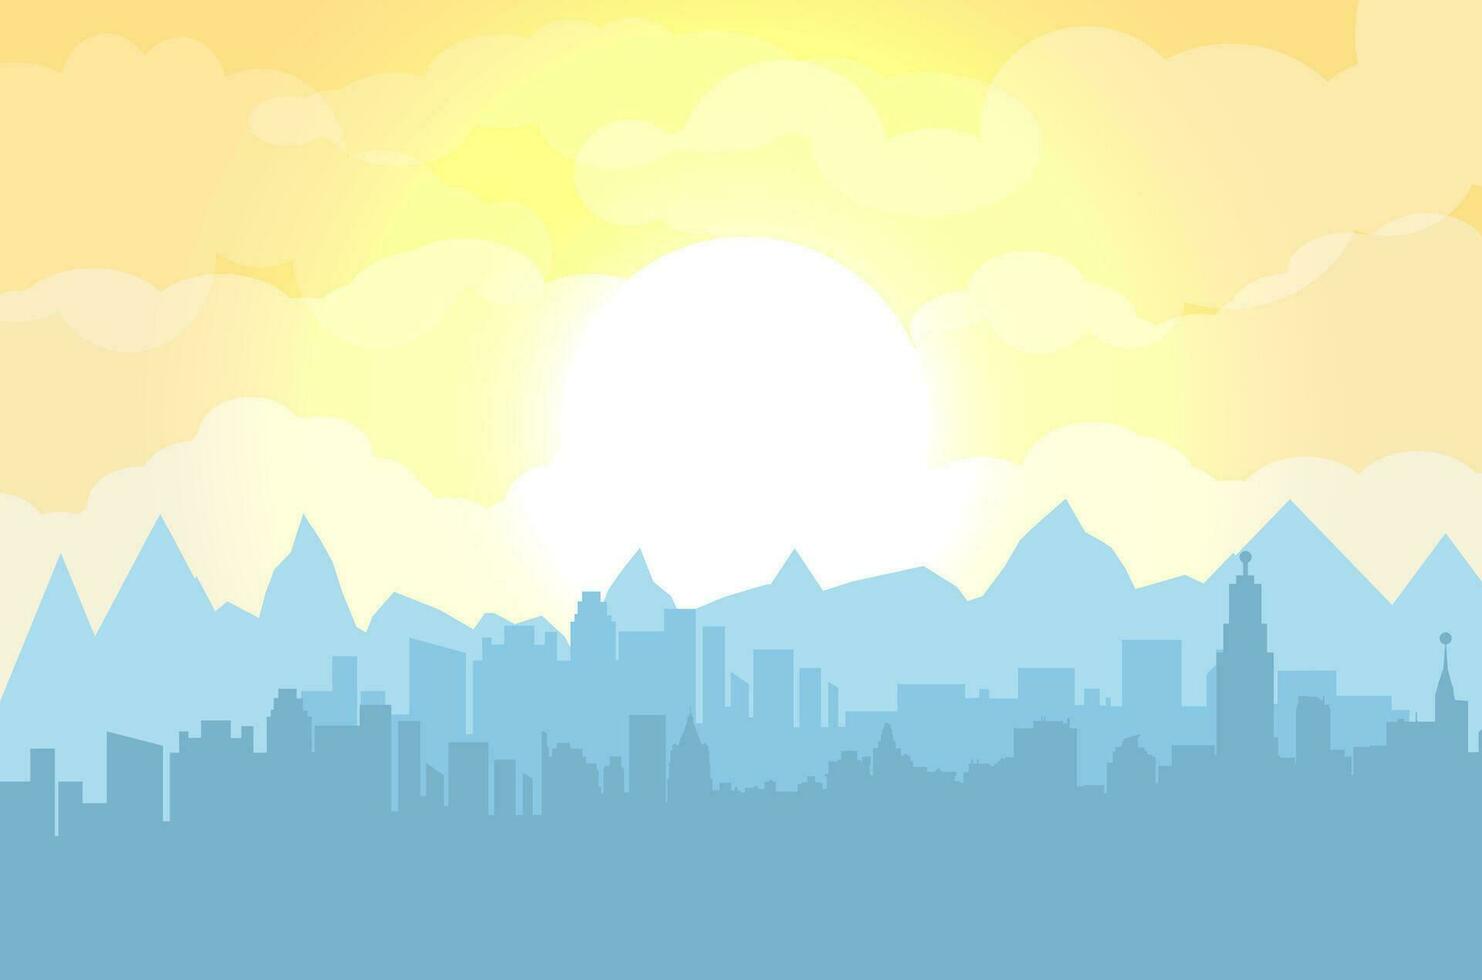 Mañana ciudad horizonte. edificios silueta paisaje urbano con montañas. grande ciudad calles niebla terminado ciudad. amarillo cielo con Dom y nubes vector ilustración